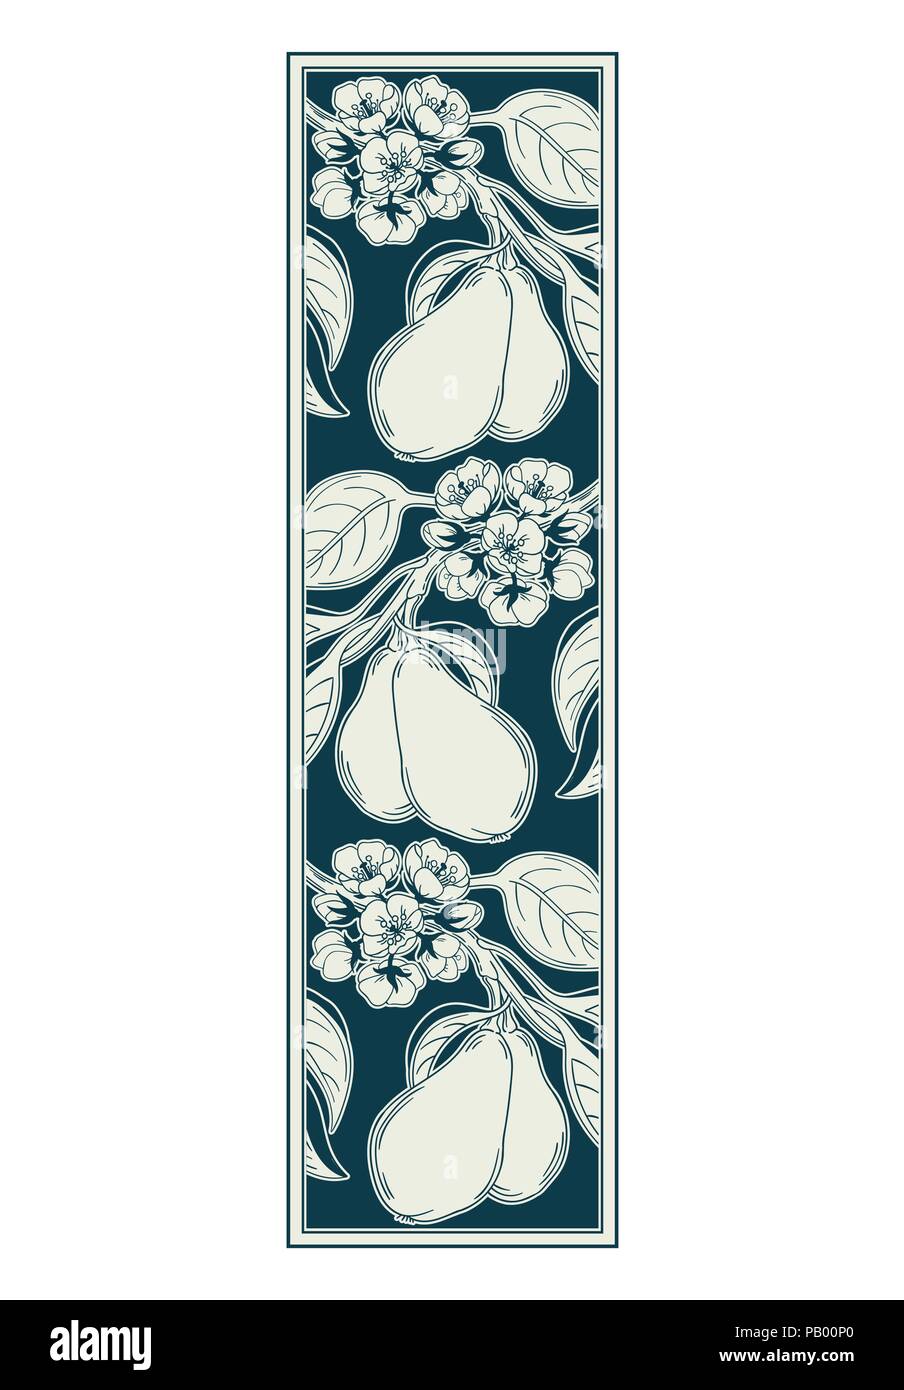 Vector Illustration einer dekorativen Zierpflanzen Vignette mit Pear Tree Zweig im Retro-look im viktorianischen Stil, mit Blumen blühen und reifen Früchten, Jugendstil Stock Vektor